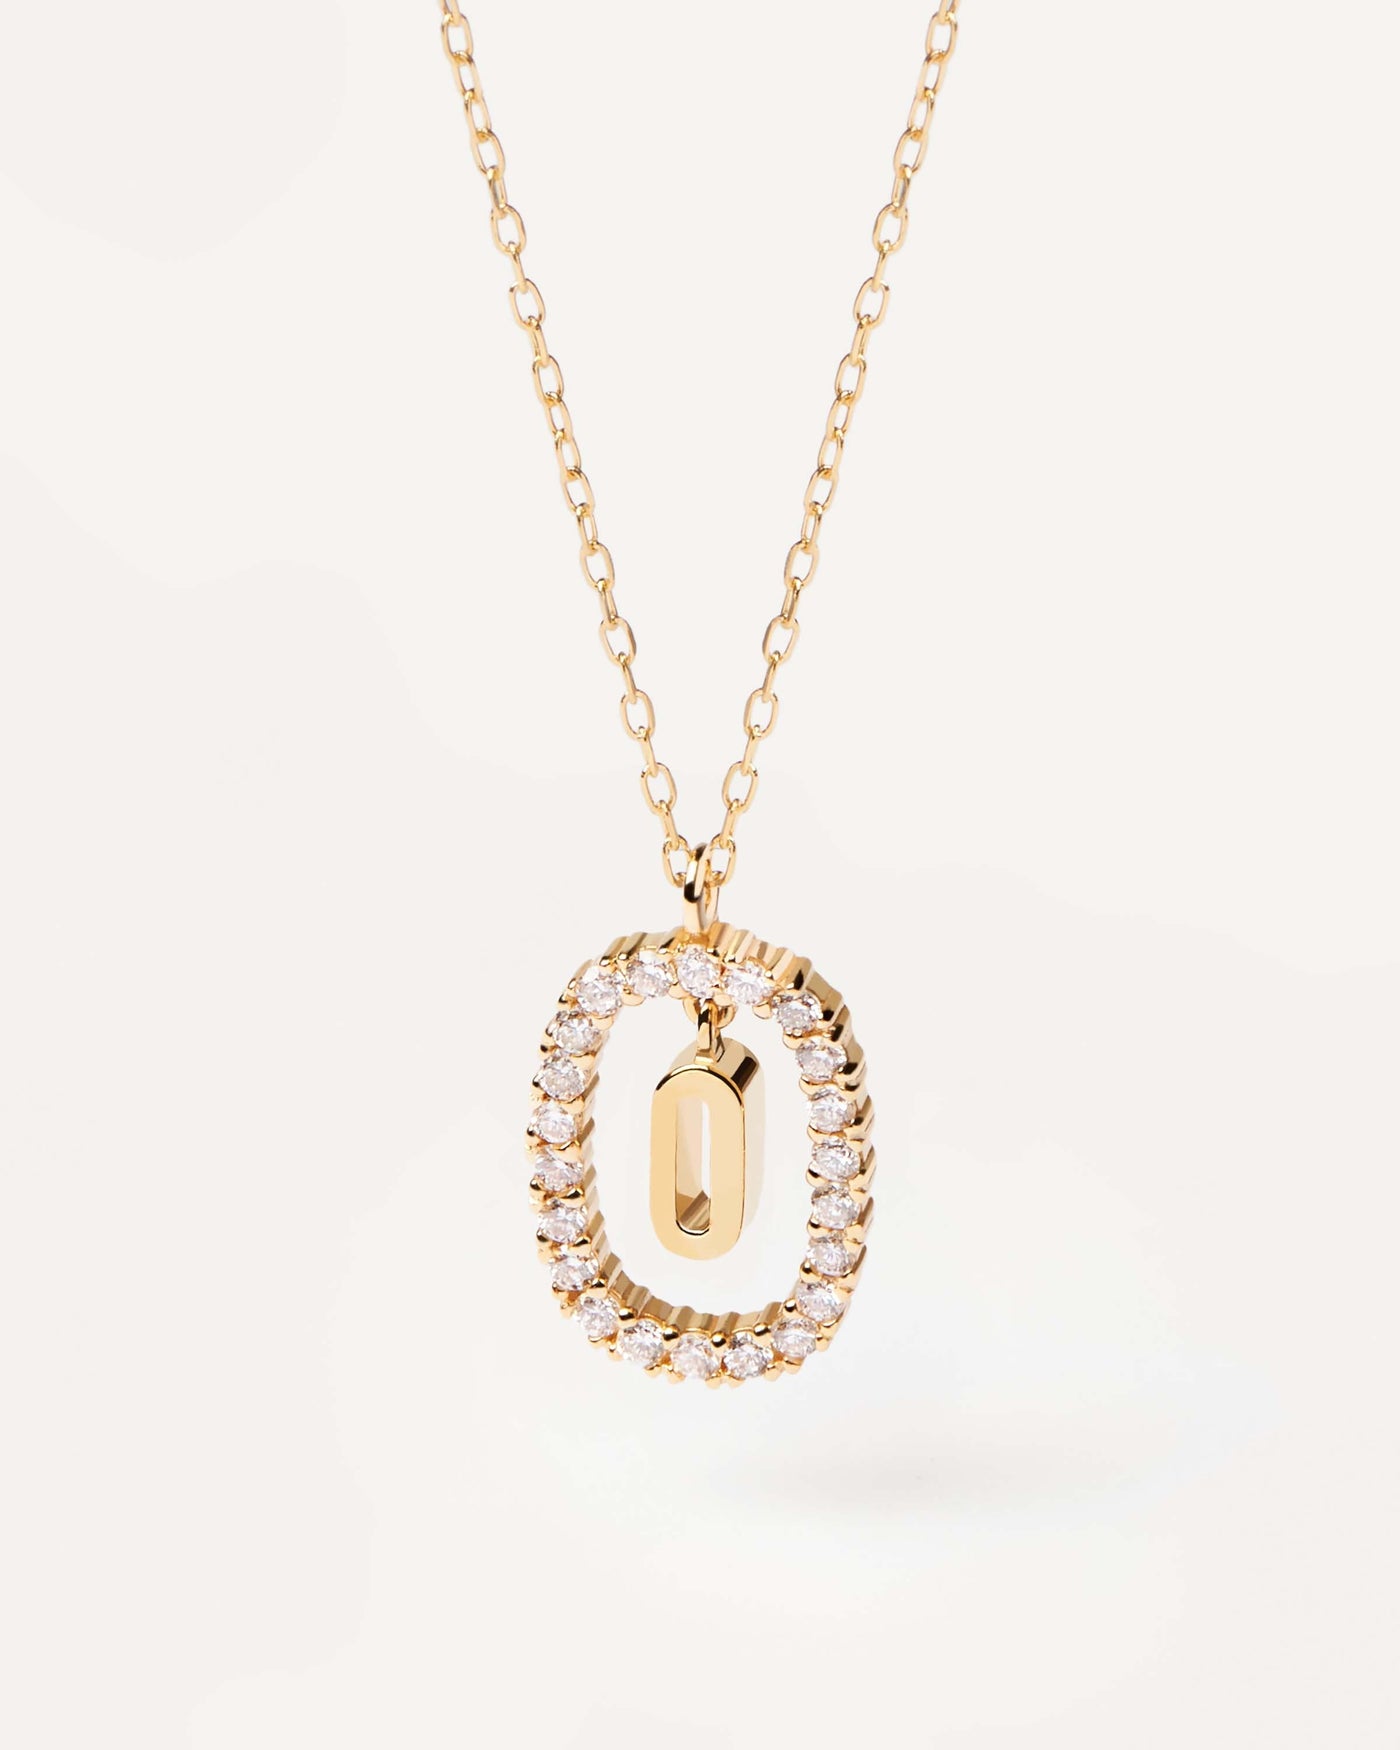 GoldHalskette mit Diamanten Buchstabe O. Erstes O-Halskette in soliden Gelbgold, umkreist von 0,33 Karat-Labor-Diamanten. Erhalten Sie die neuesten Produkte von PDPAOLA. Geben Sie Ihre Bestellung sicher auf und erhalten Sie diesen Bestseller.